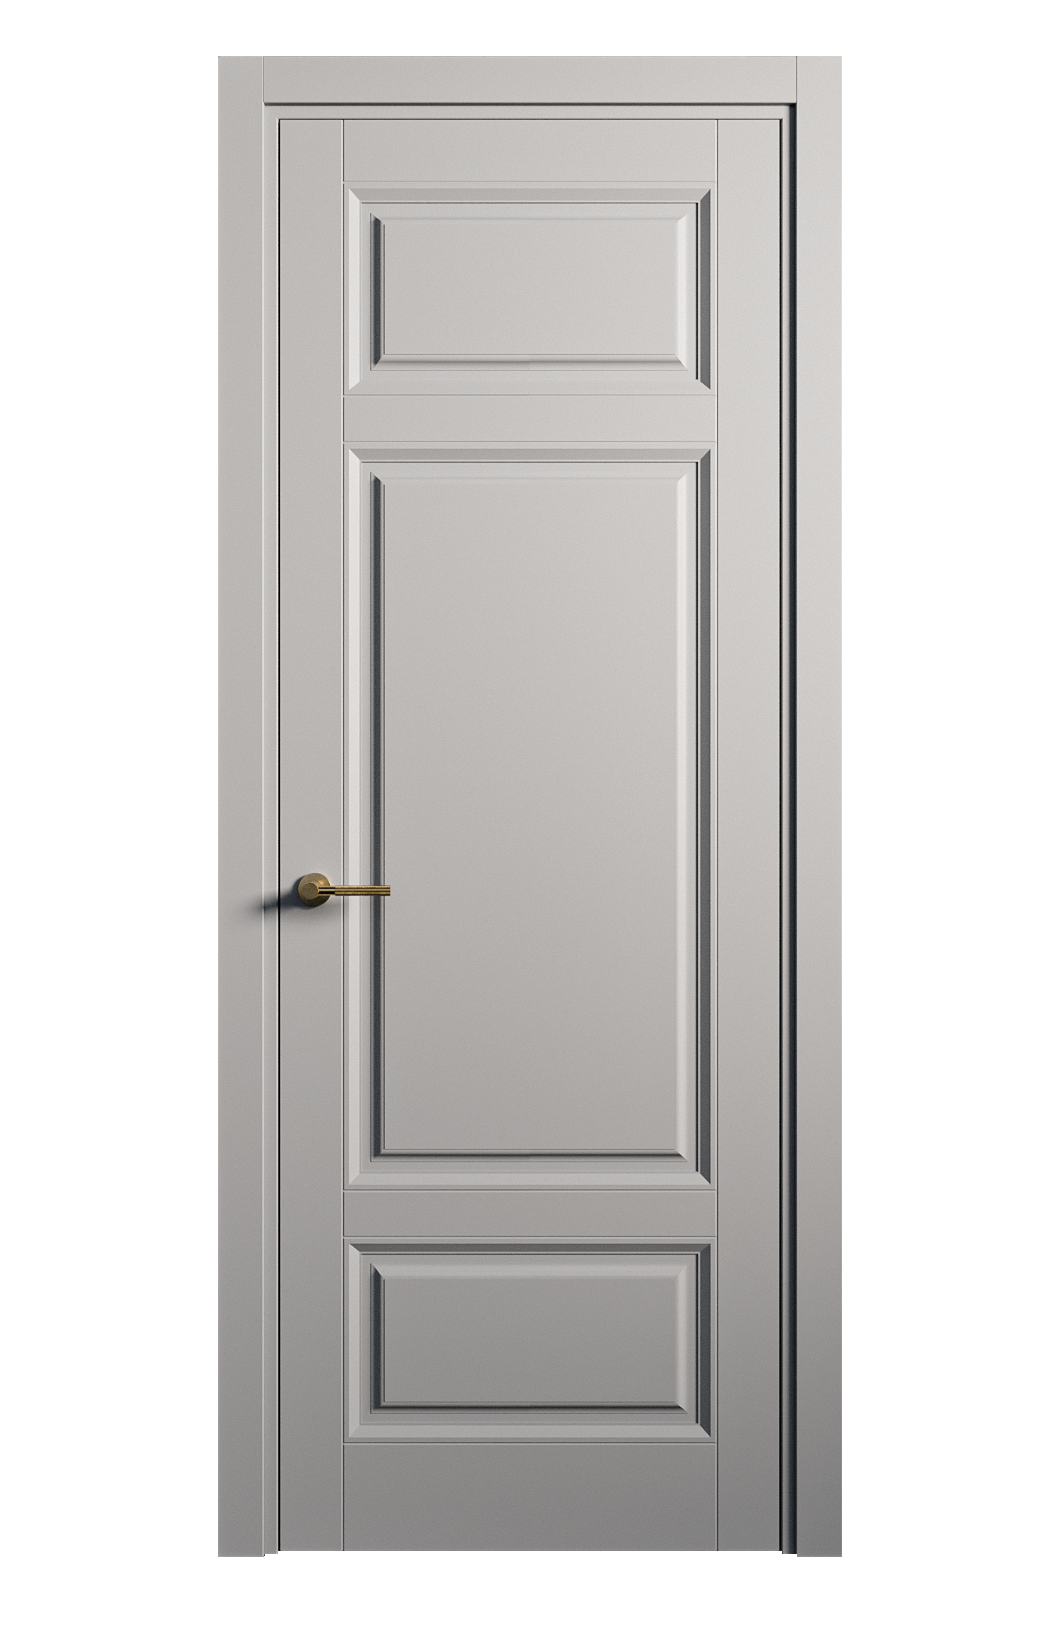 Межкомнатная дверь Venezia-5 глухая эмаль ral 7040 25903